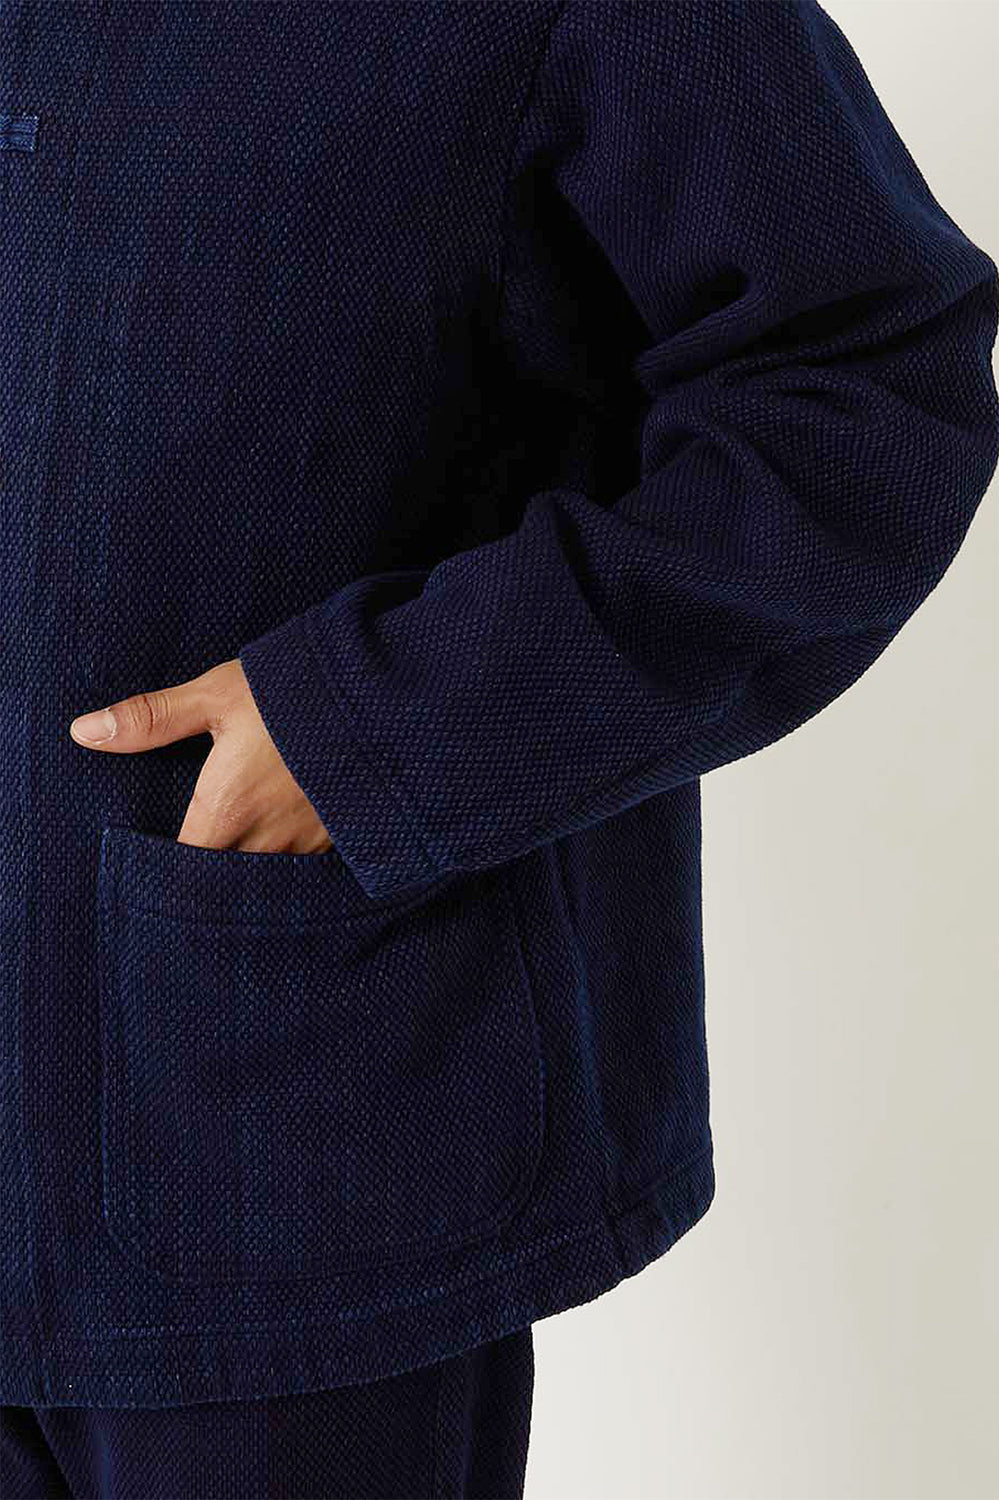 Woven Indigo SASHIKO Oriental Jacket UNISEX